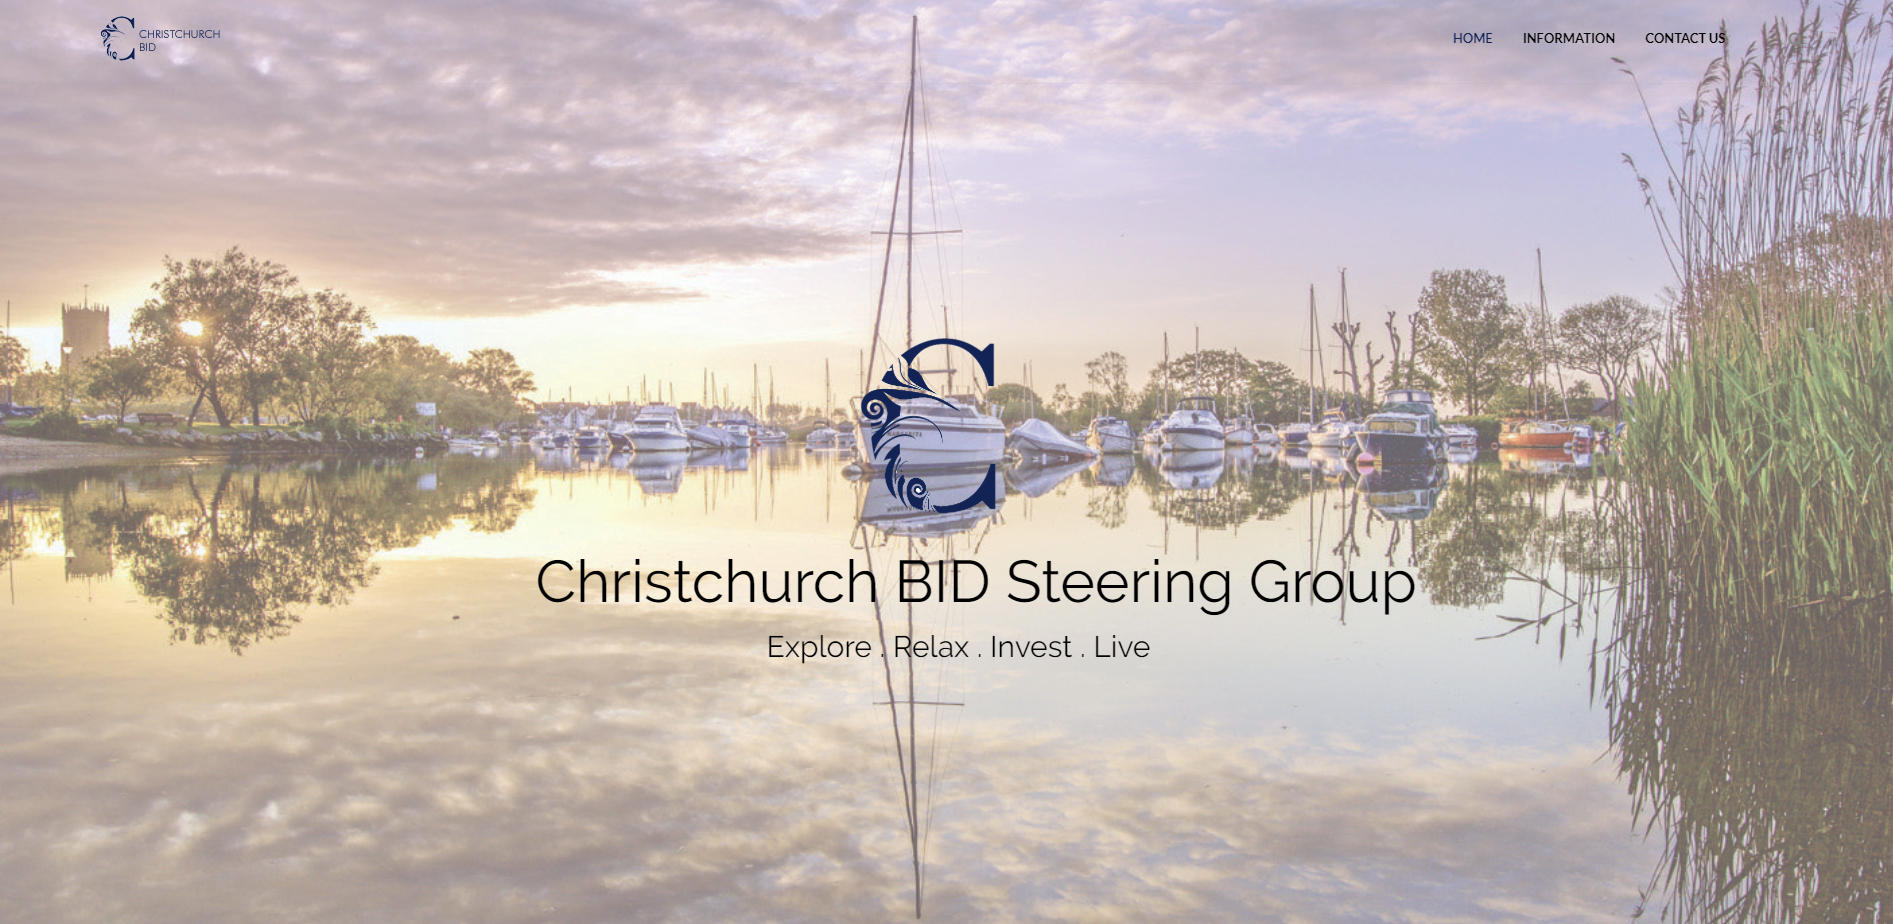 Website Launch for Christchurch BID